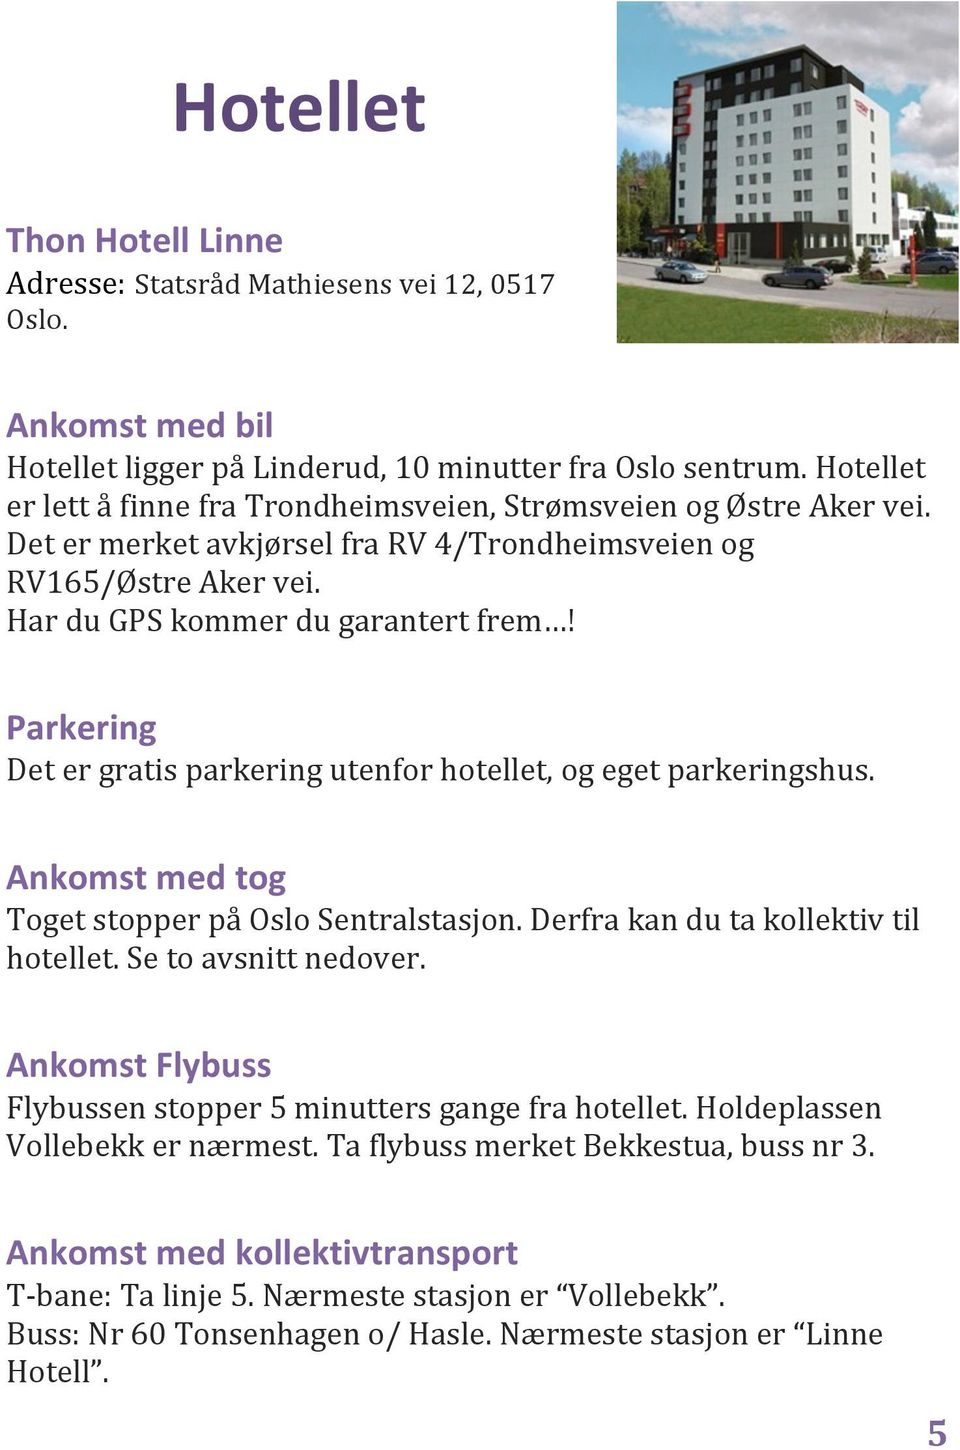 Parkering Det er gratis parkering utenfor hotellet, og eget parkeringshus. Ankomst med tog Toget stopper på Oslo Sentralstasjon. Derfra kan du ta kollektiv til hotellet. Se to avsnitt nedover.